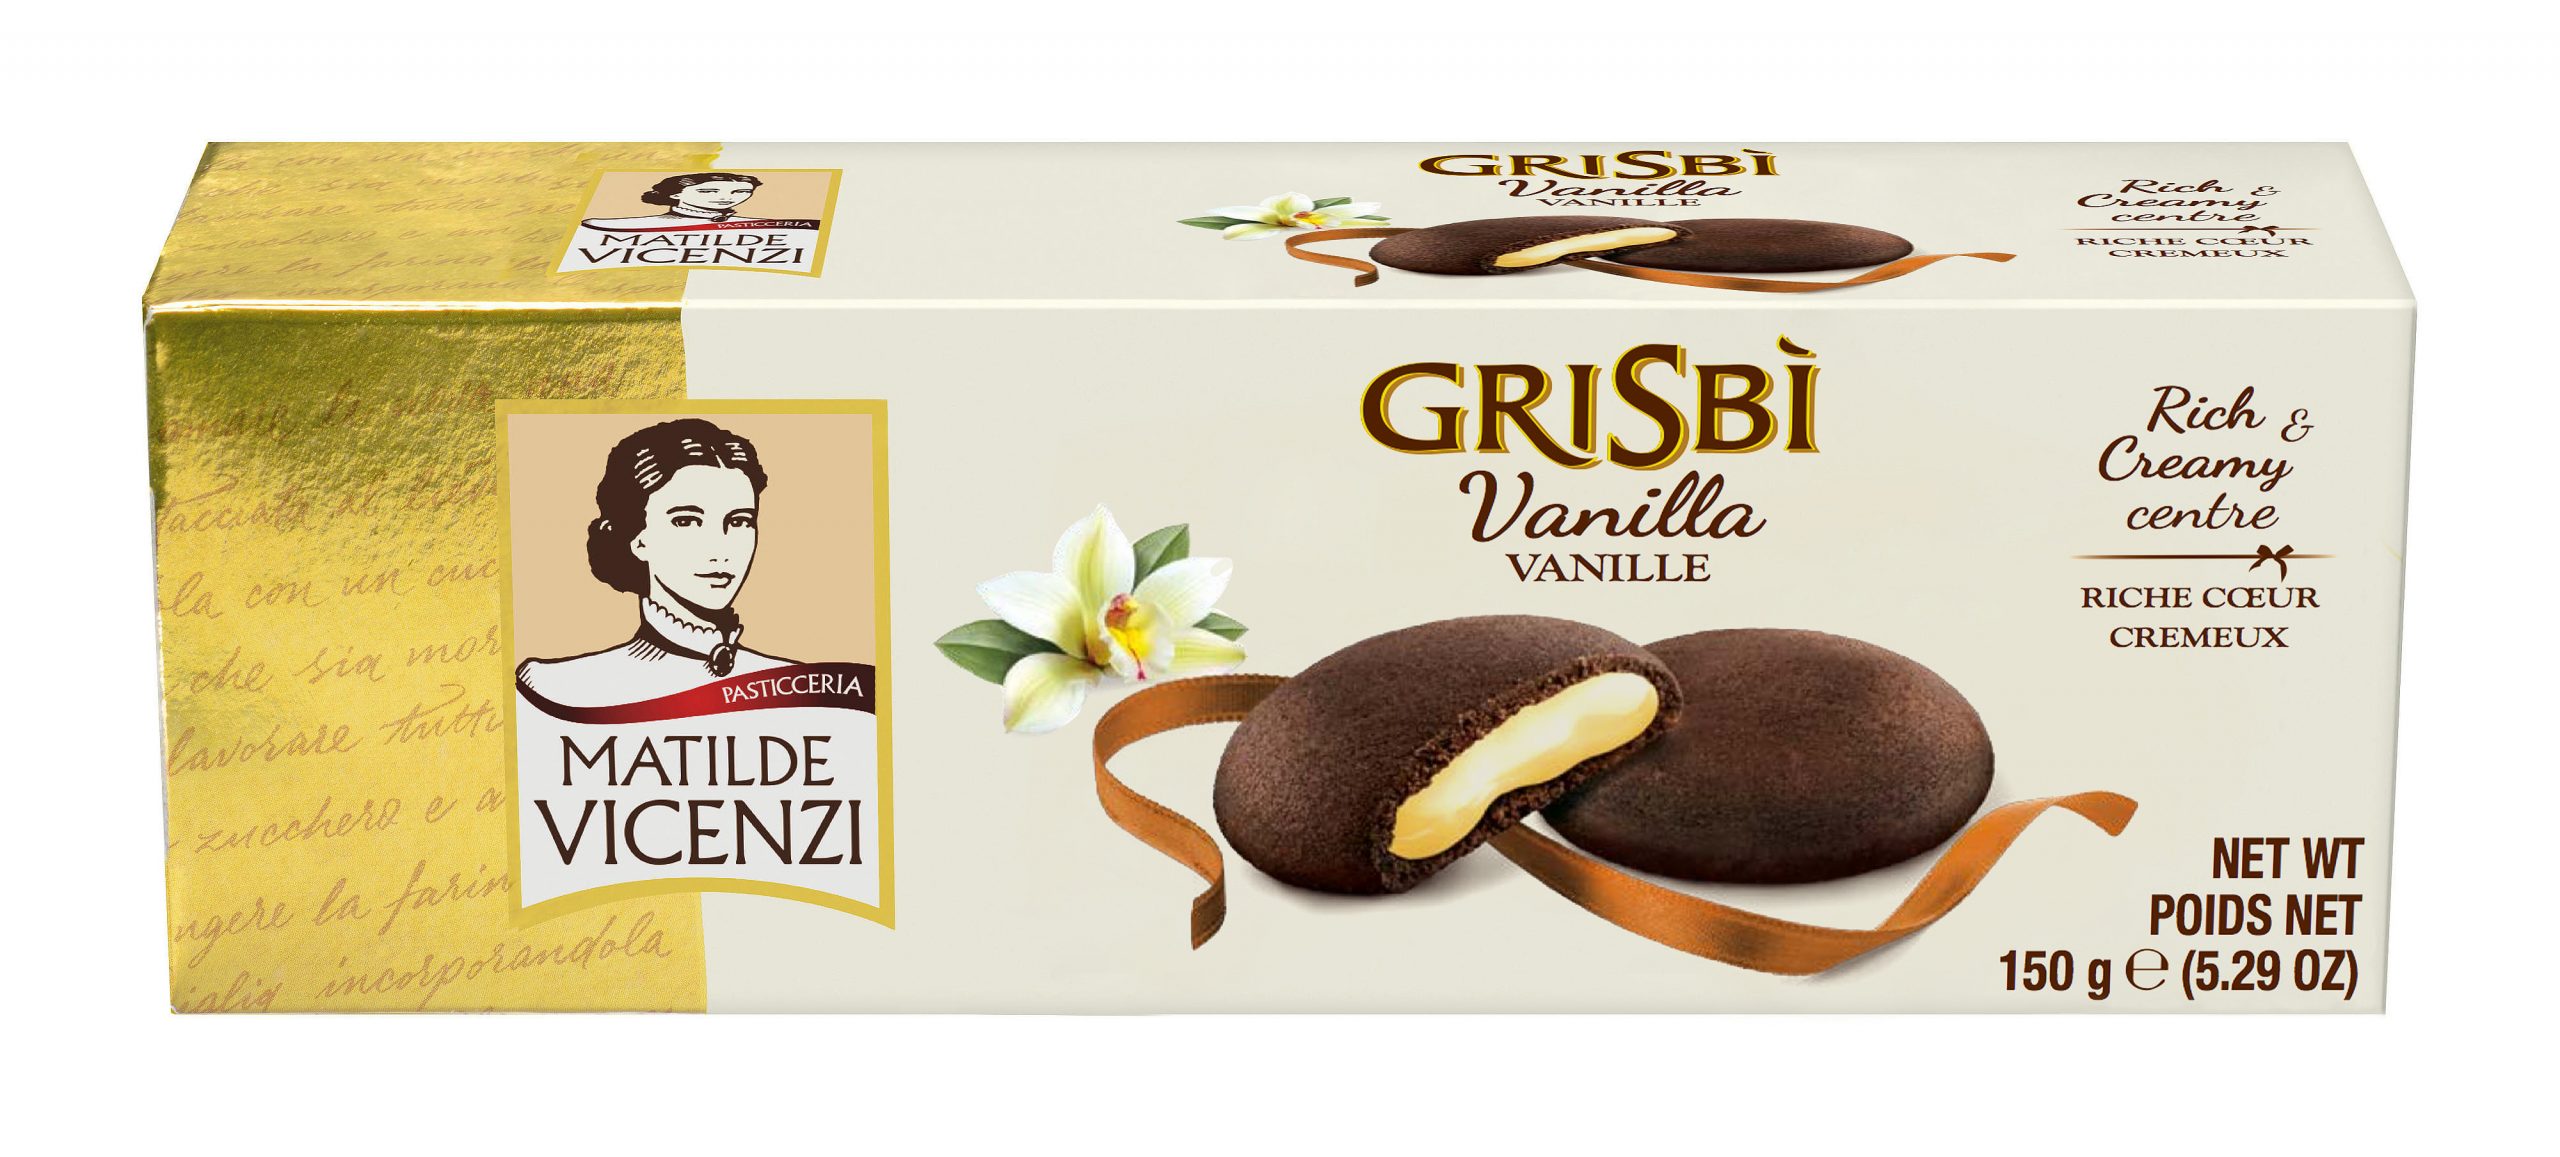 Grisbi French Vanilla vaníliakrémmel töltött keksz 150g